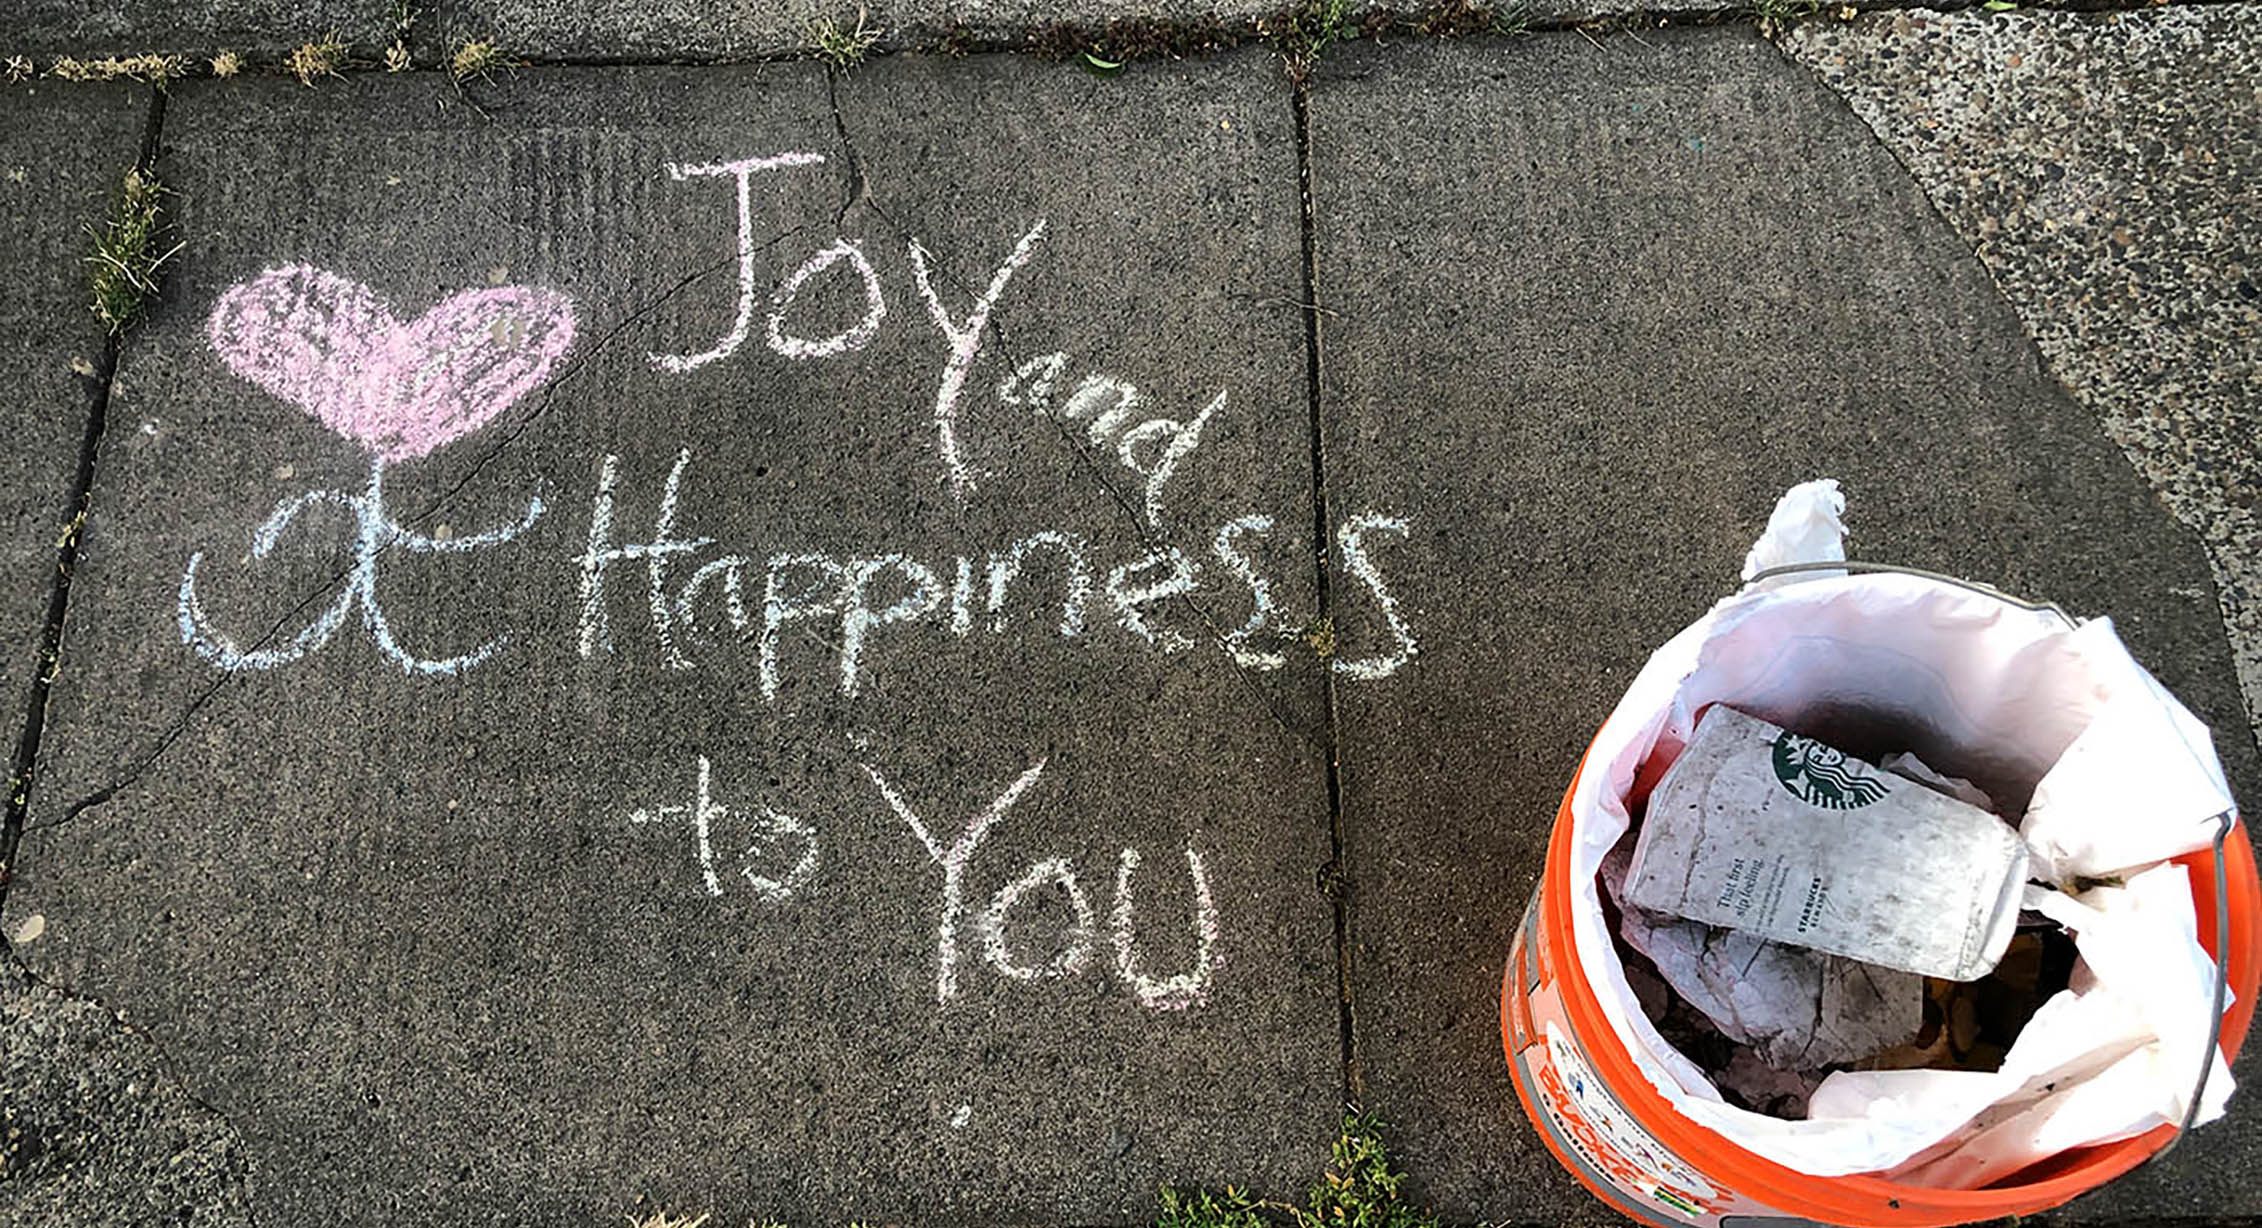 Sidewalk art next to a bucket of litter